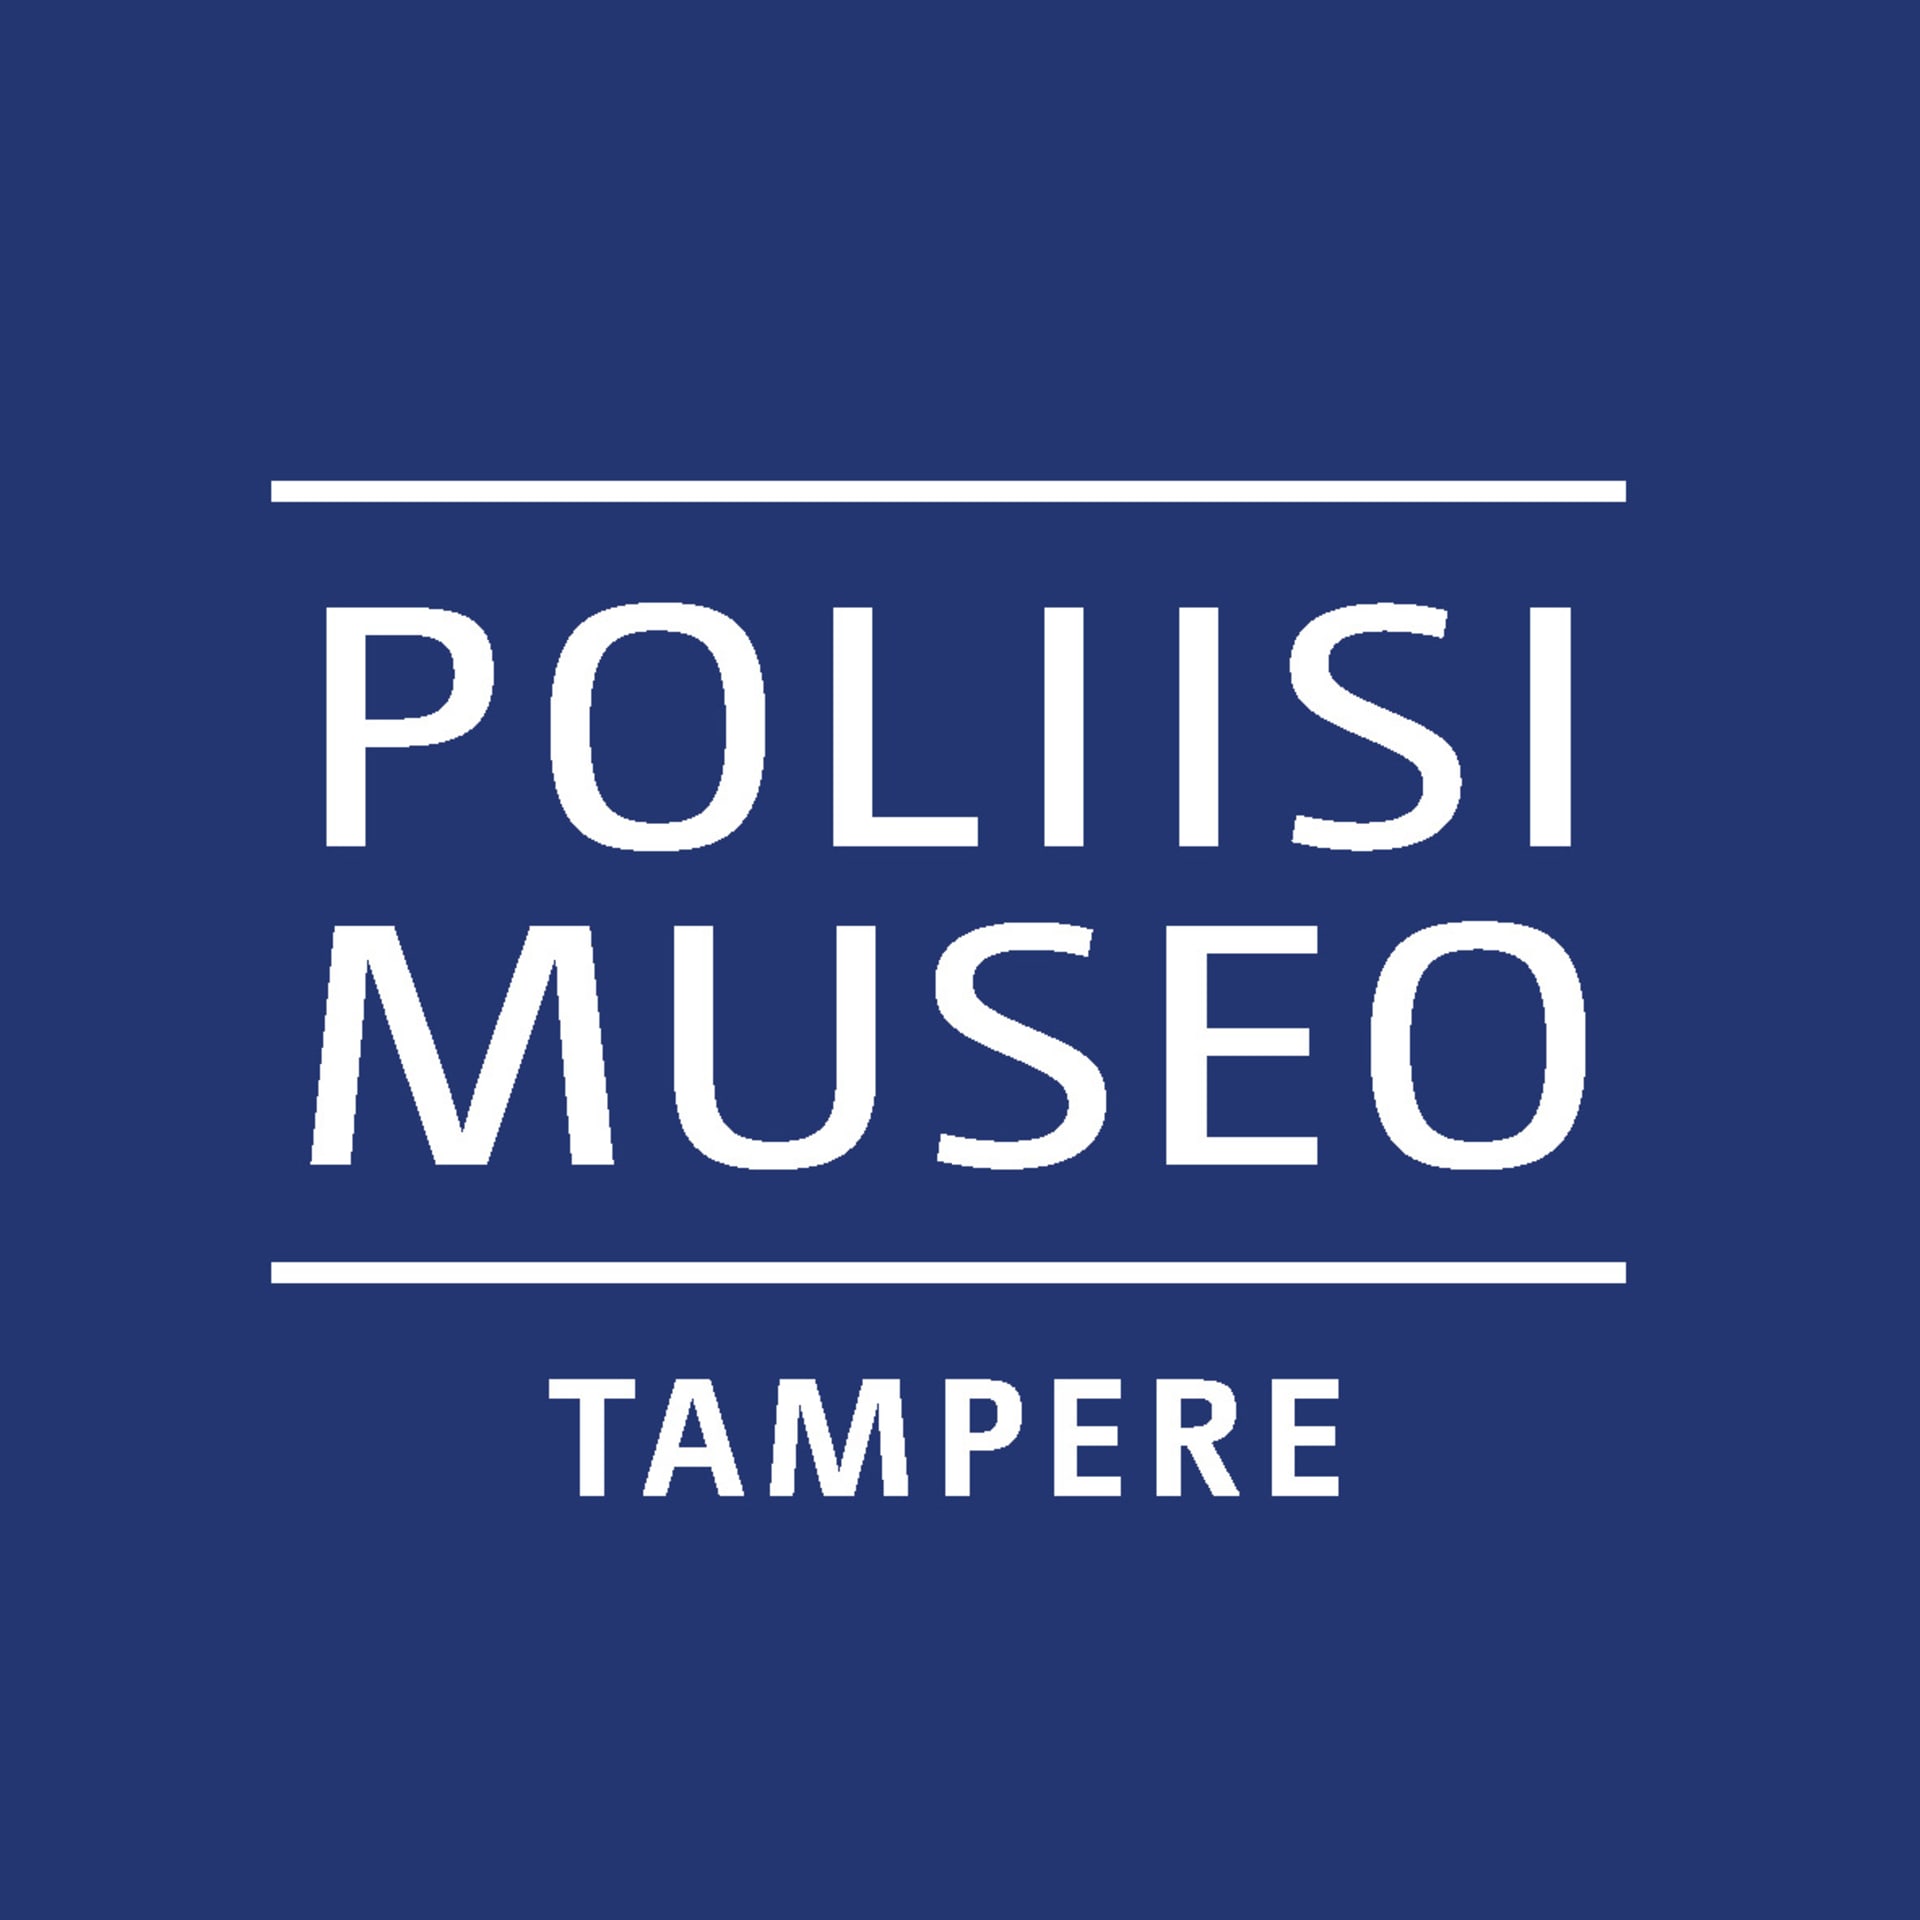 Poliisimuseon logo. Sininen tausta, valkoinen teksti jossa lukee 